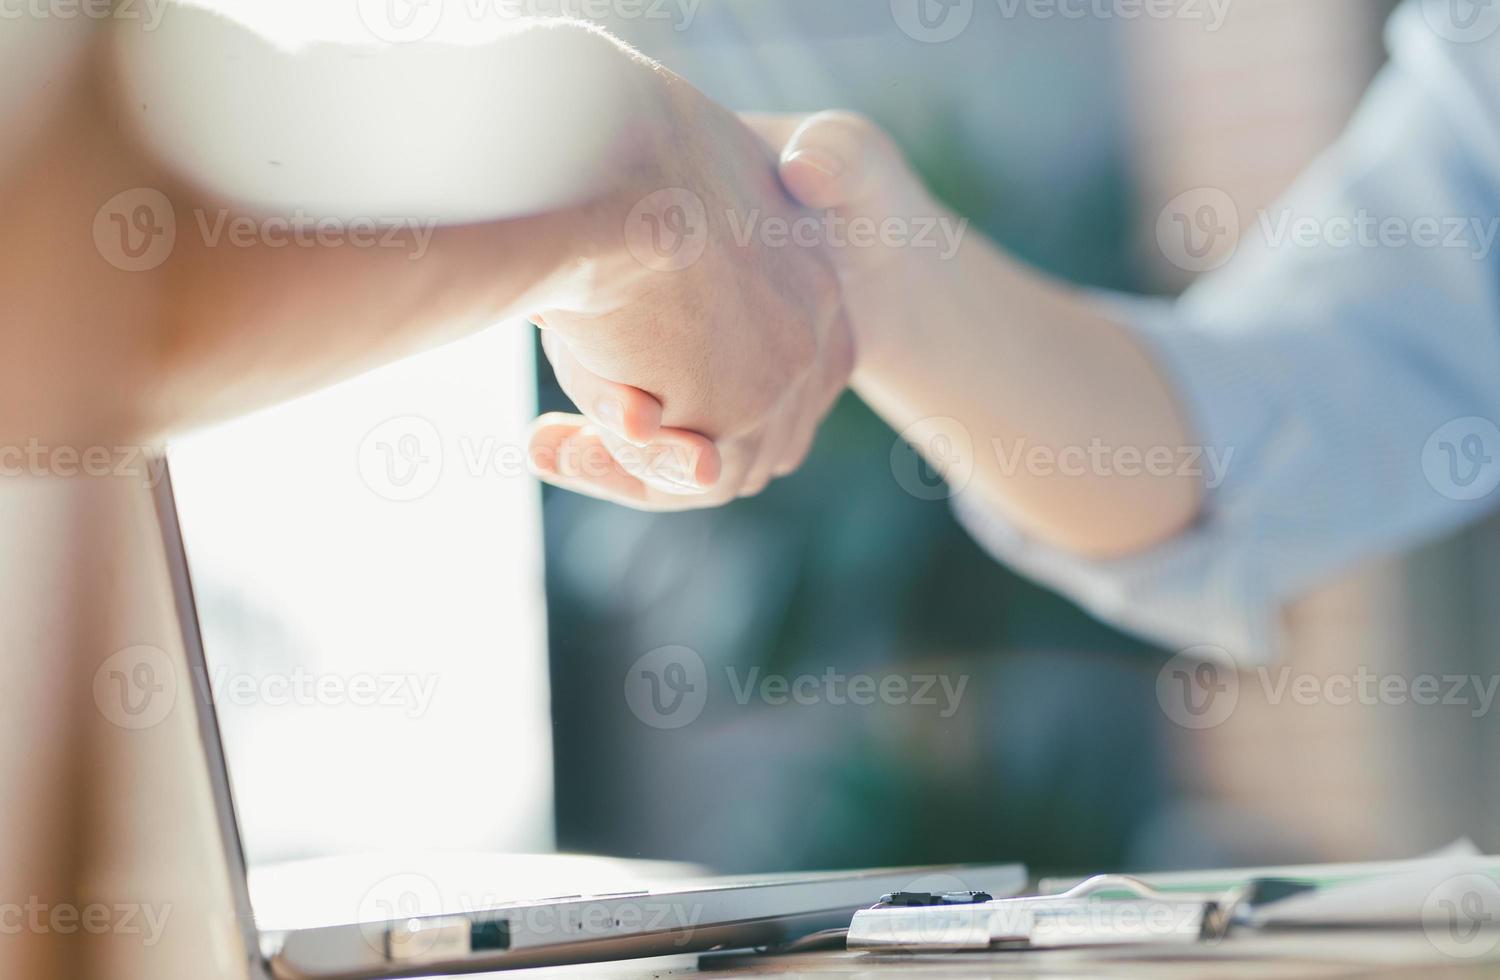 affärsförhandlingar, bilder på affärskvinnor som skakar hand, foto